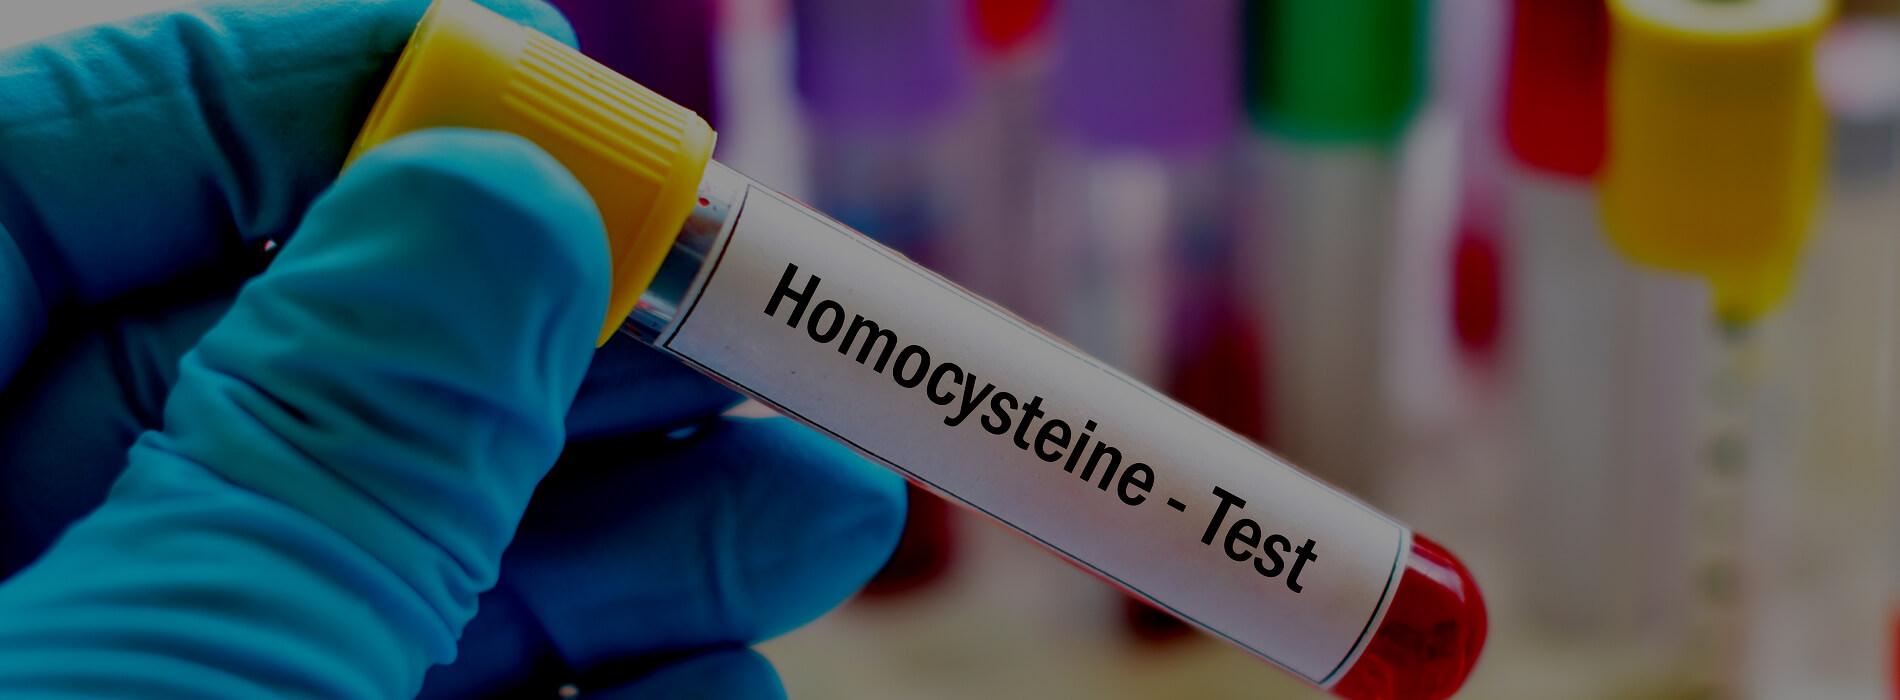 Kiedy warto wykonać badanie poziomu homocysteiny? O czym świadczy wysoki poziom?